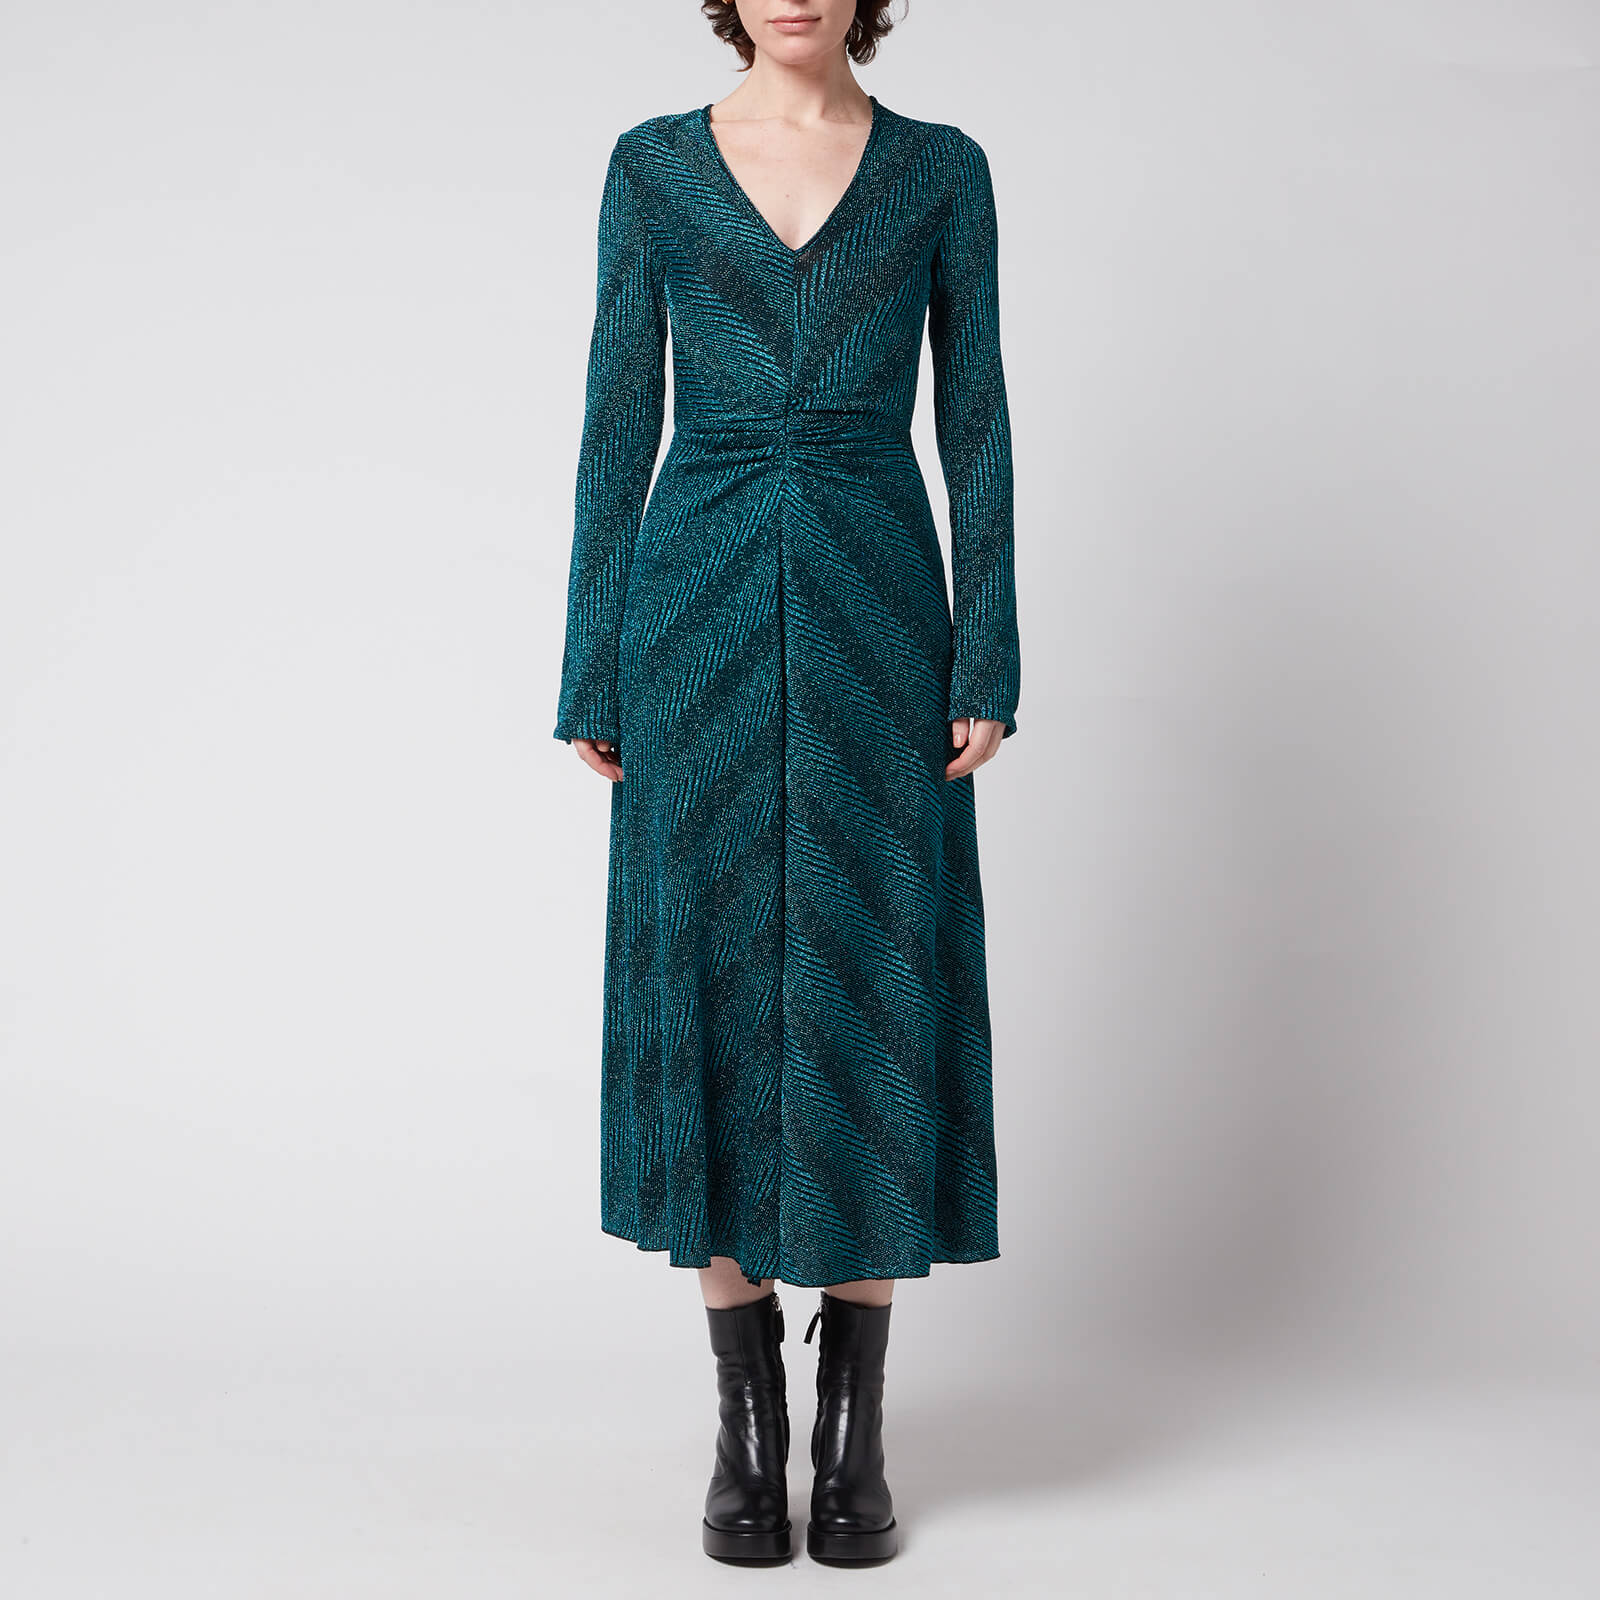 ROTATE Birger Christensen Women's Sierra Dress - Teal - DK 32/UK 6